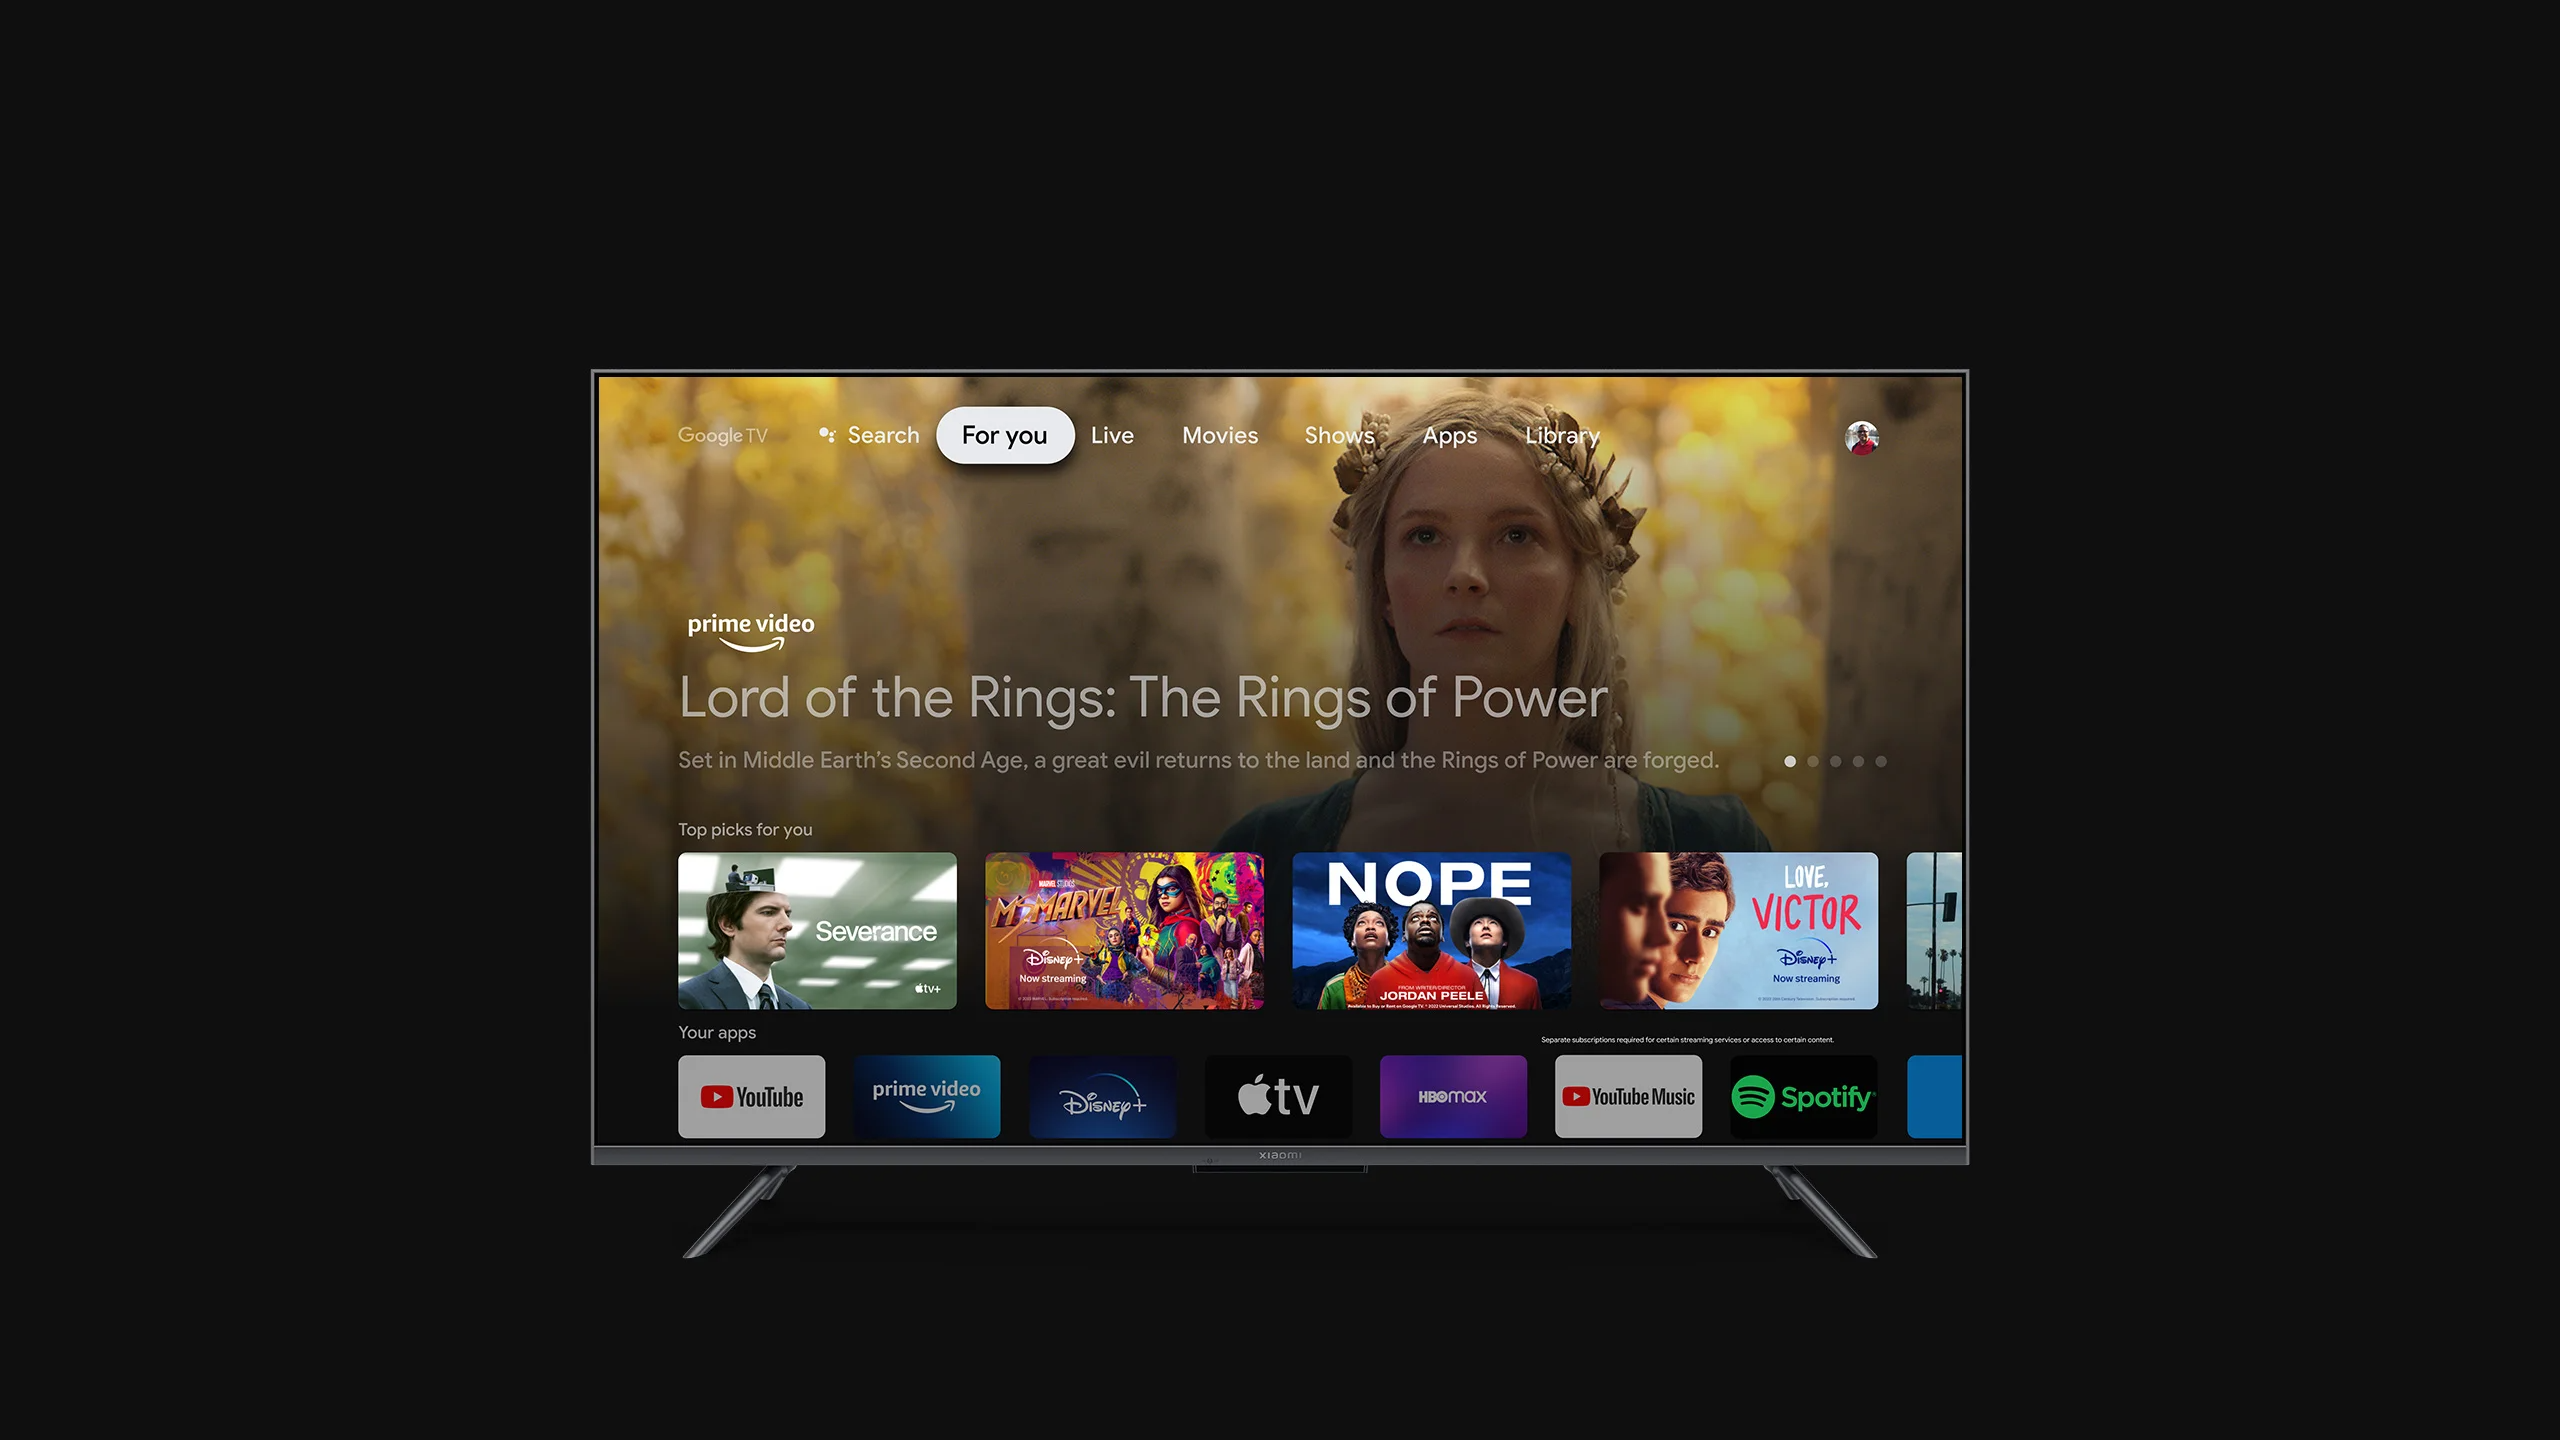 Llegan las nuevas TV Q2 de Xiaomi, televisores 4K OLED con Dolby Vision IQ